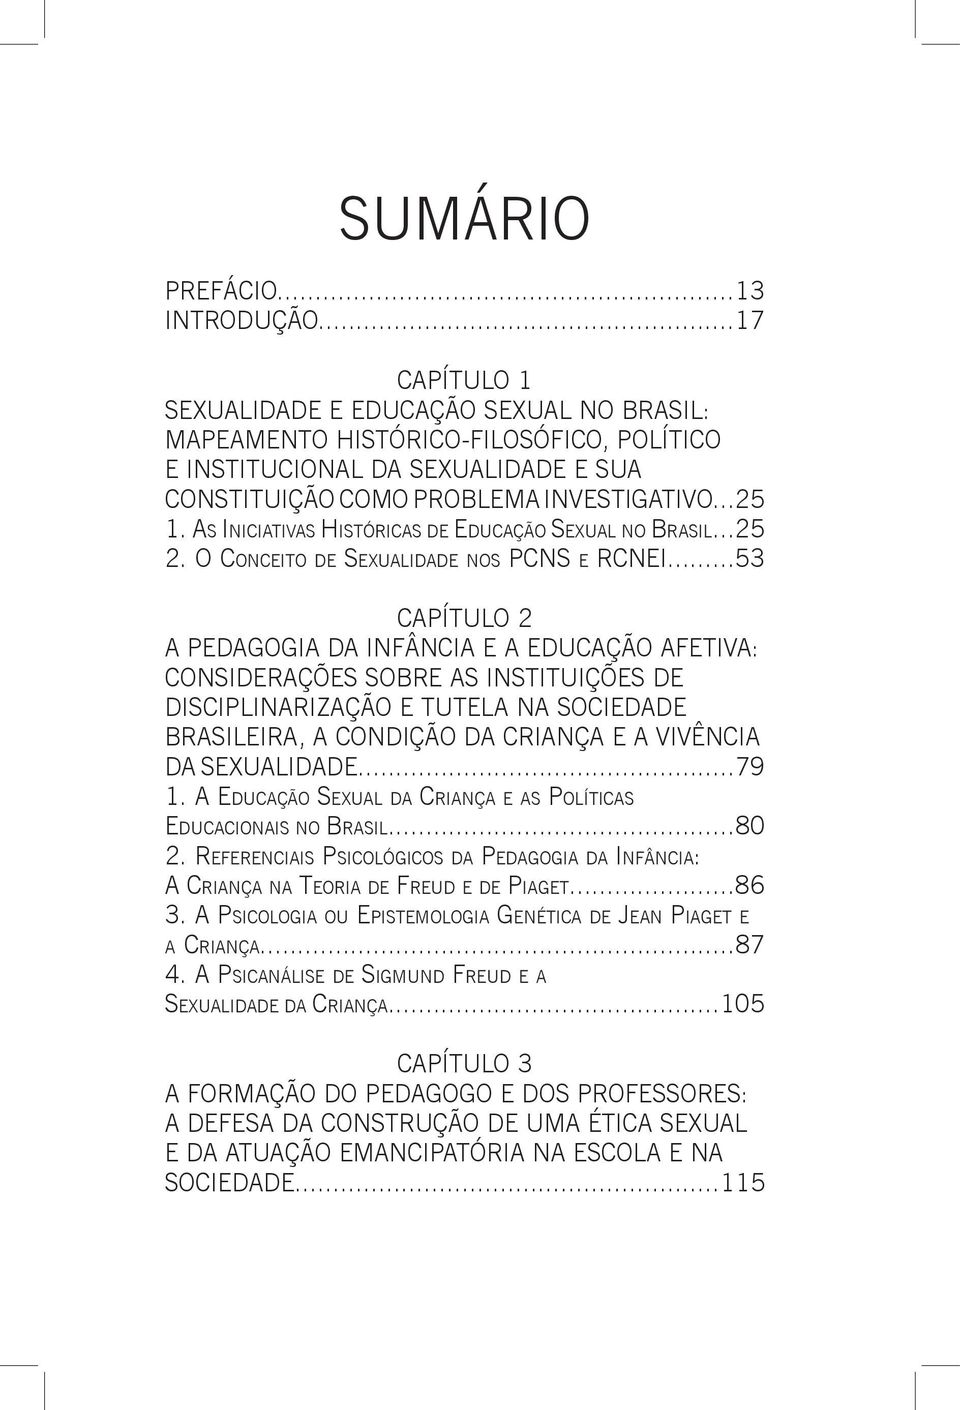 As Iniciativas Históricas de Educação Sexual no Brasil...25 2. O Conceito de Sexualidade nos PCNS e RCNEI.